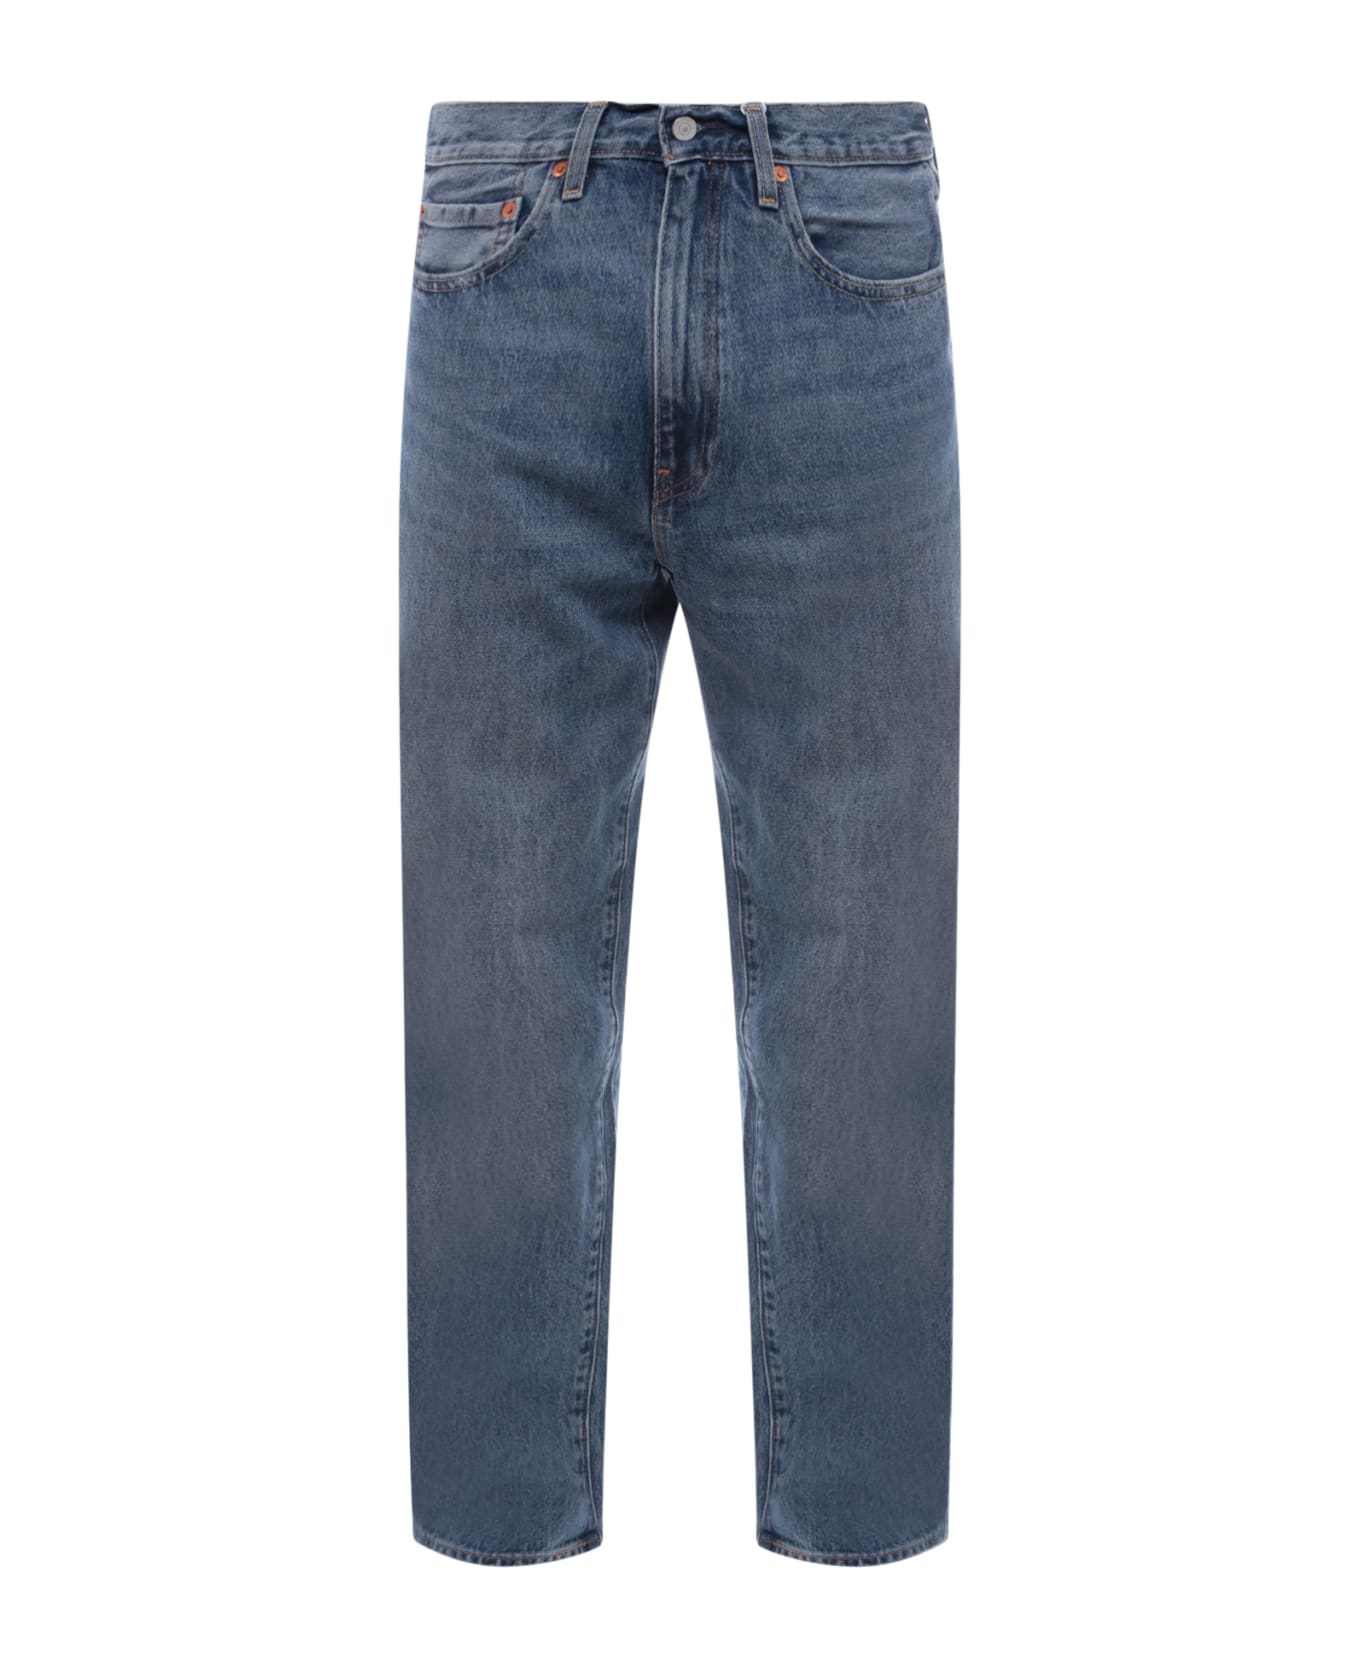 Levi's 568 Jeans - Blue